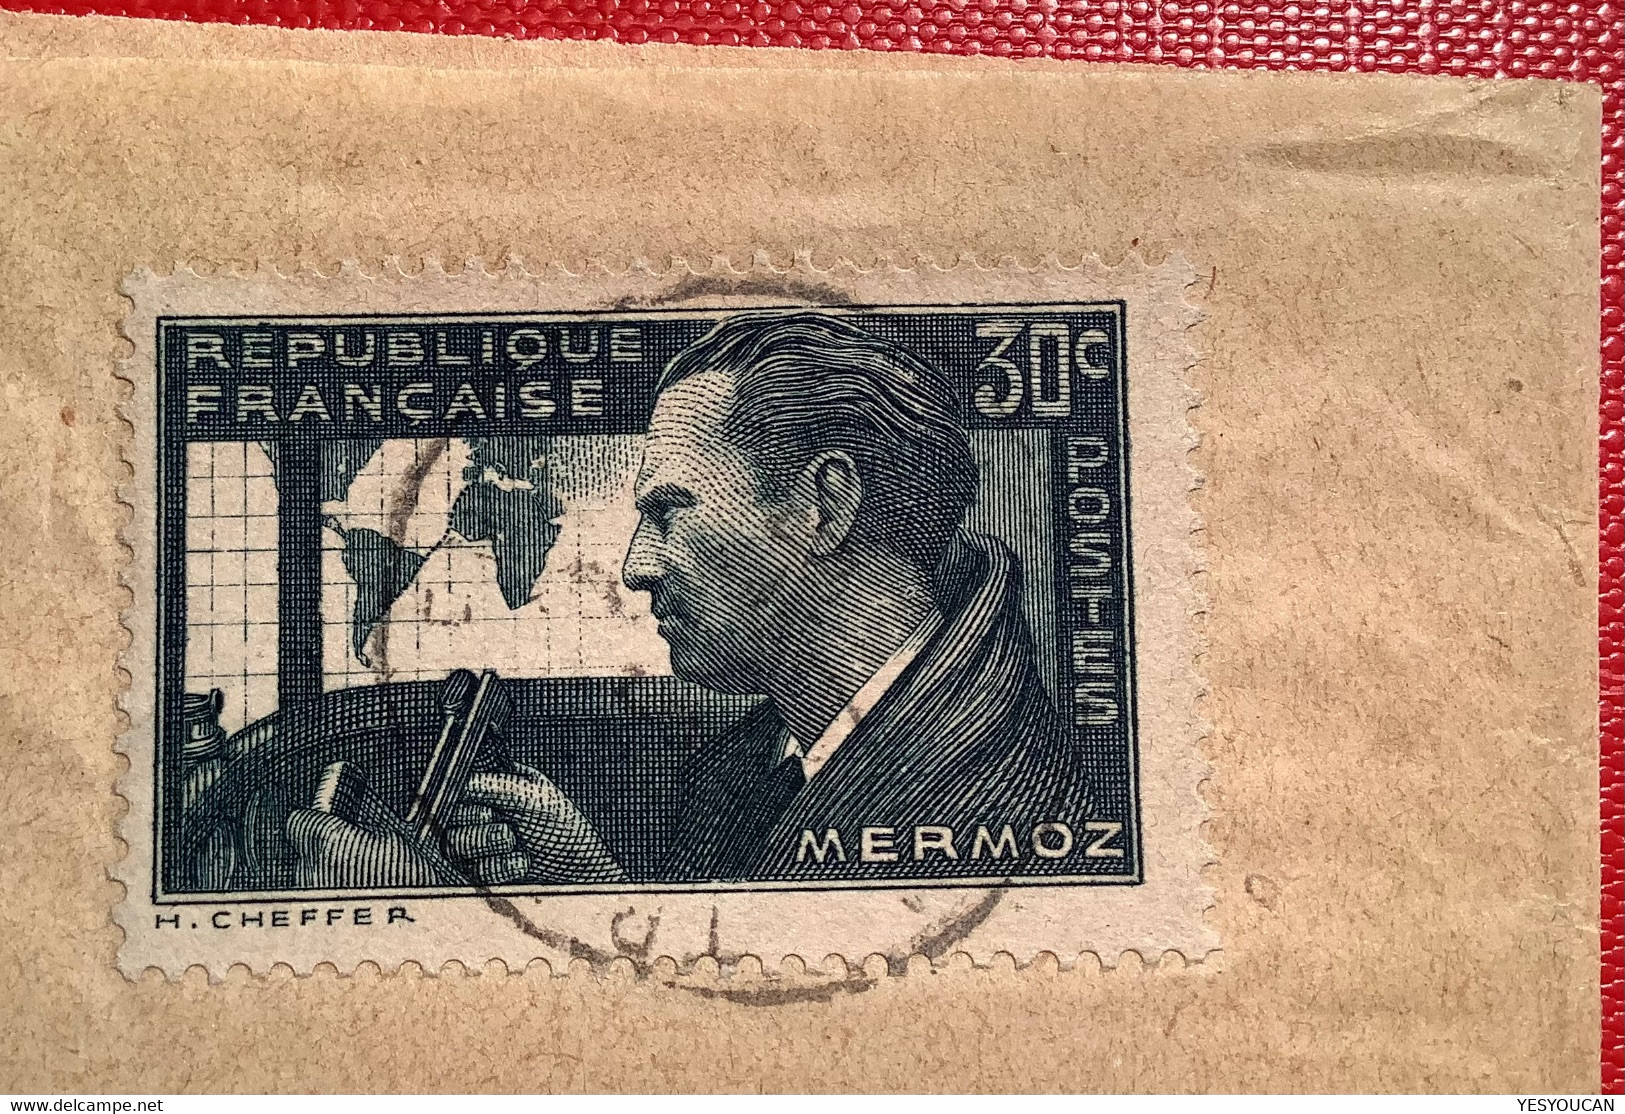 #337 30c Mermoz UTILISATION RARE Sur Bande Journal TRANS EN PROVENCE VAR 5.9.1937>Neuchatel Suisse (France Lettre - Covers & Documents